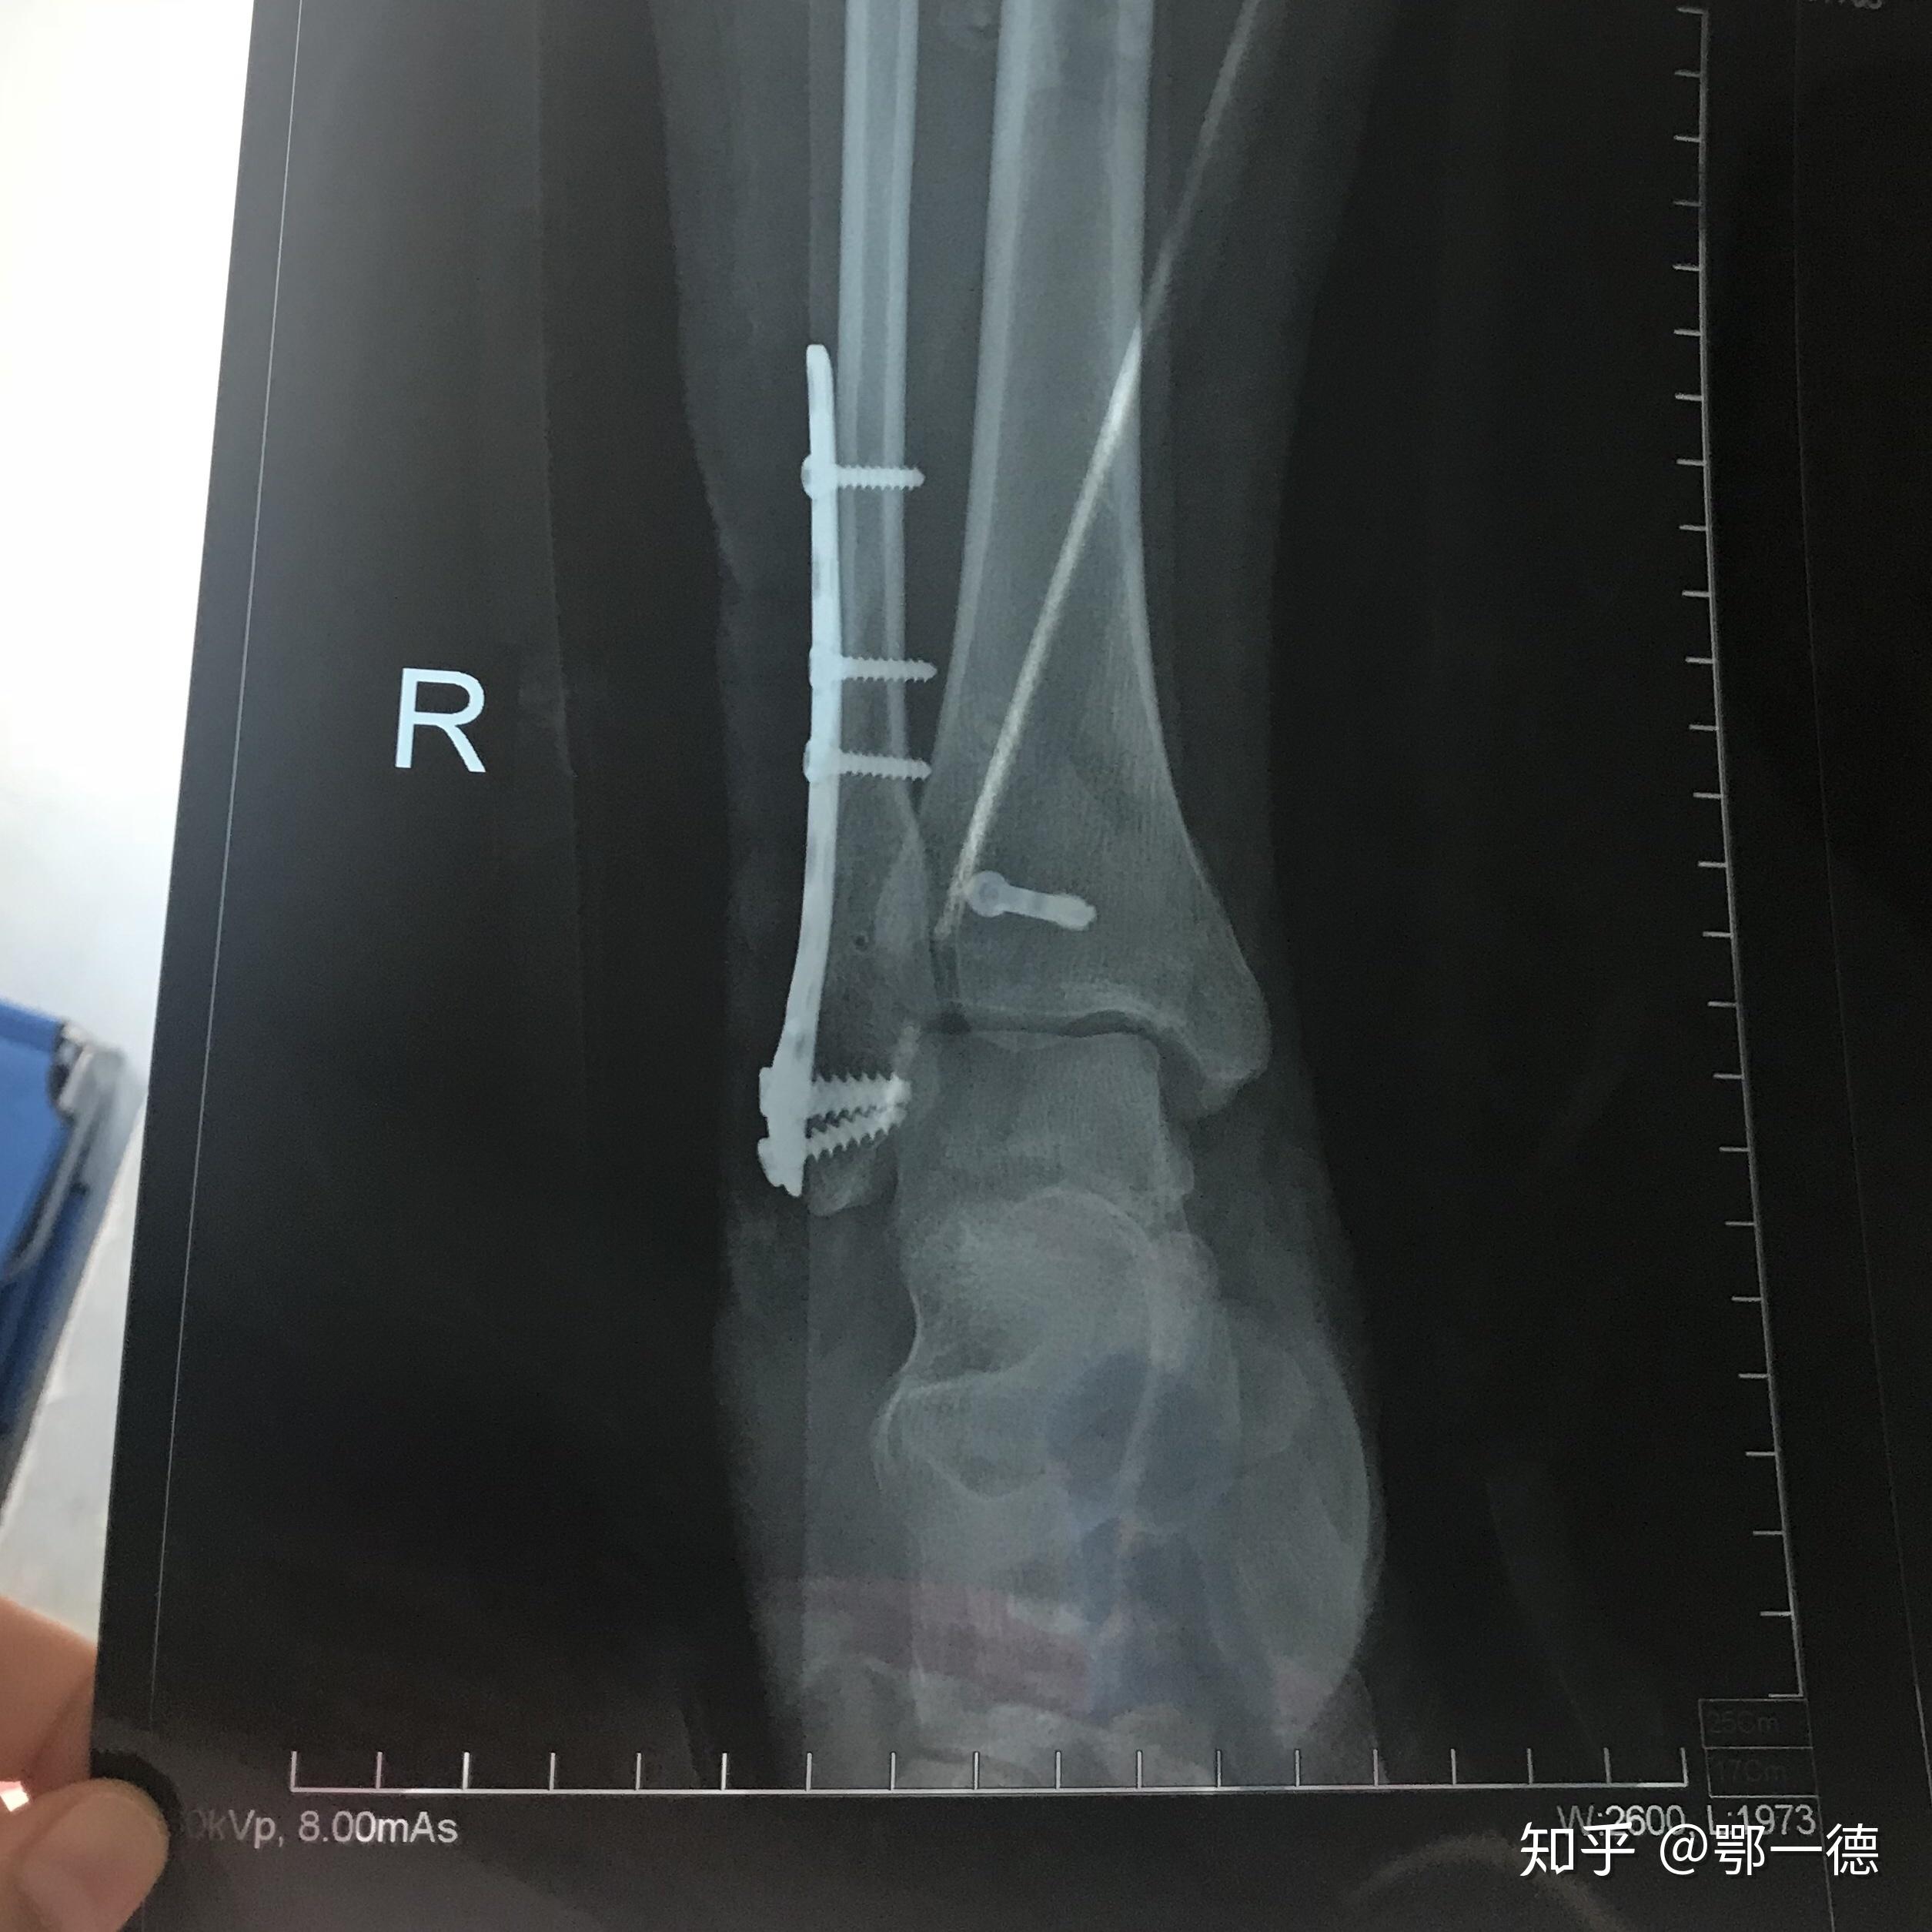 黄骨头踝关节骨折—三踝骨折一例（前外+后内侧入路） - 骨科专业讨论版 -丁香园论坛